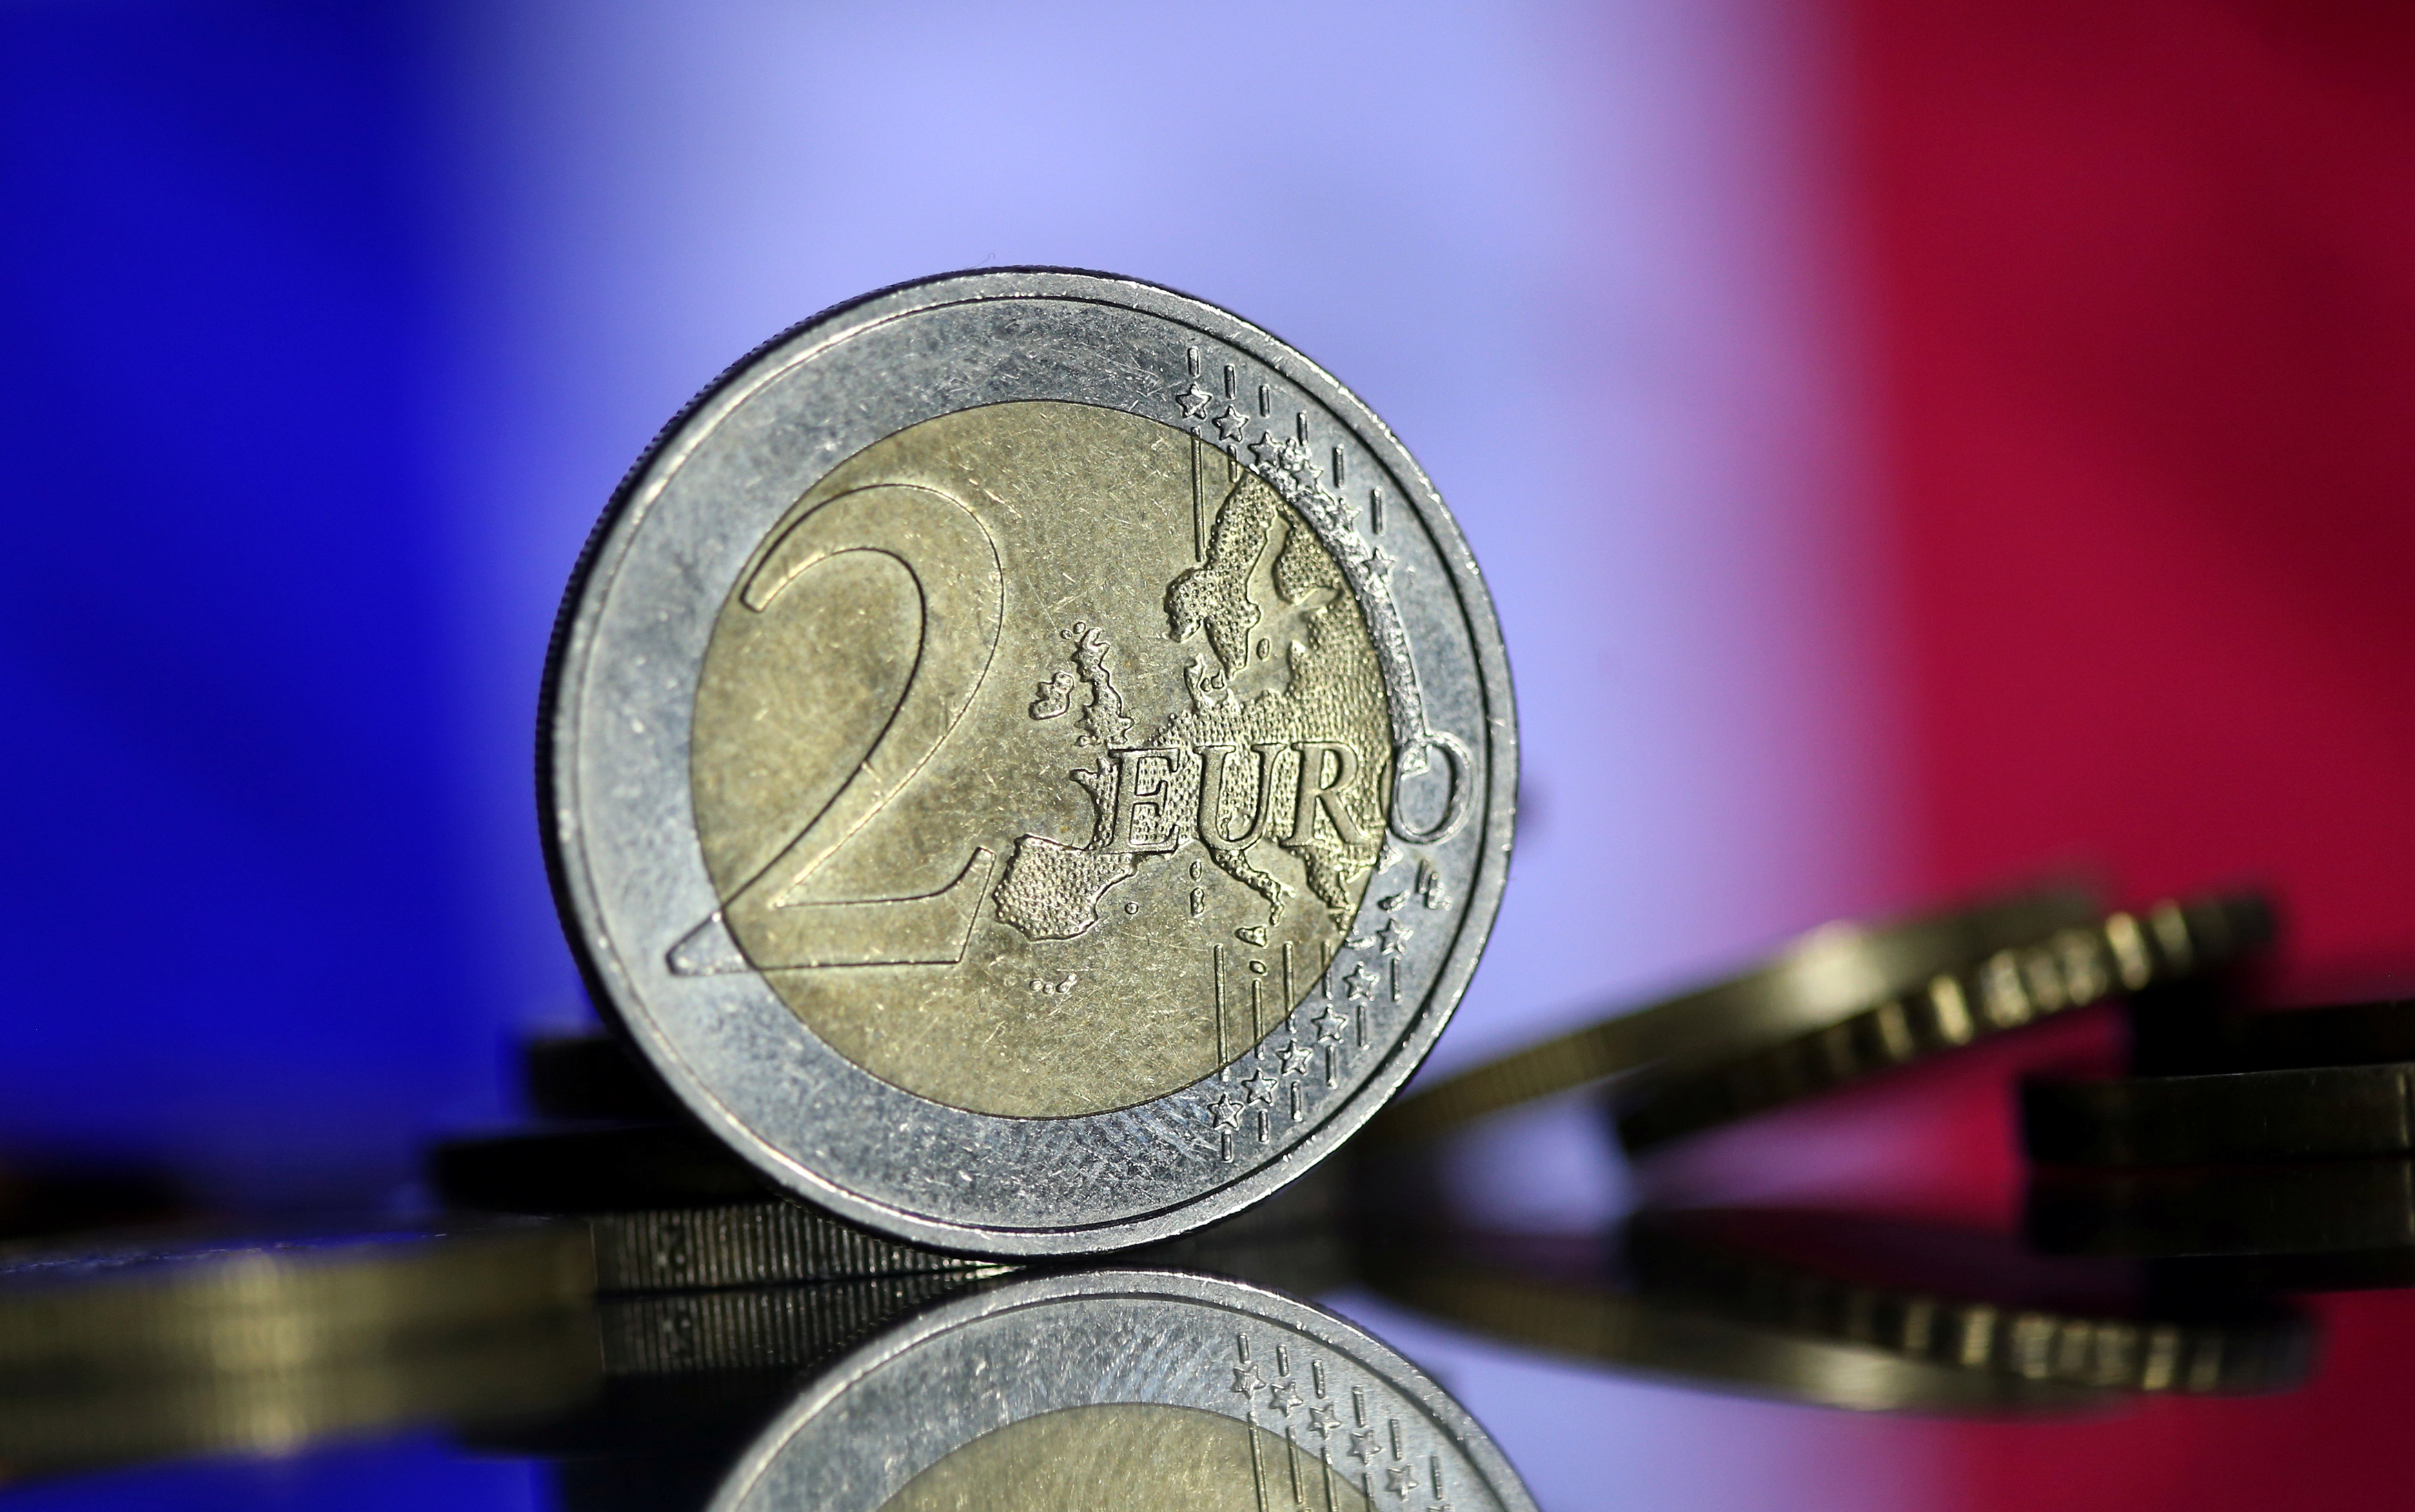 270 milliards d'euros : c'est la somme record que va emprunter l'Etat français en 2023